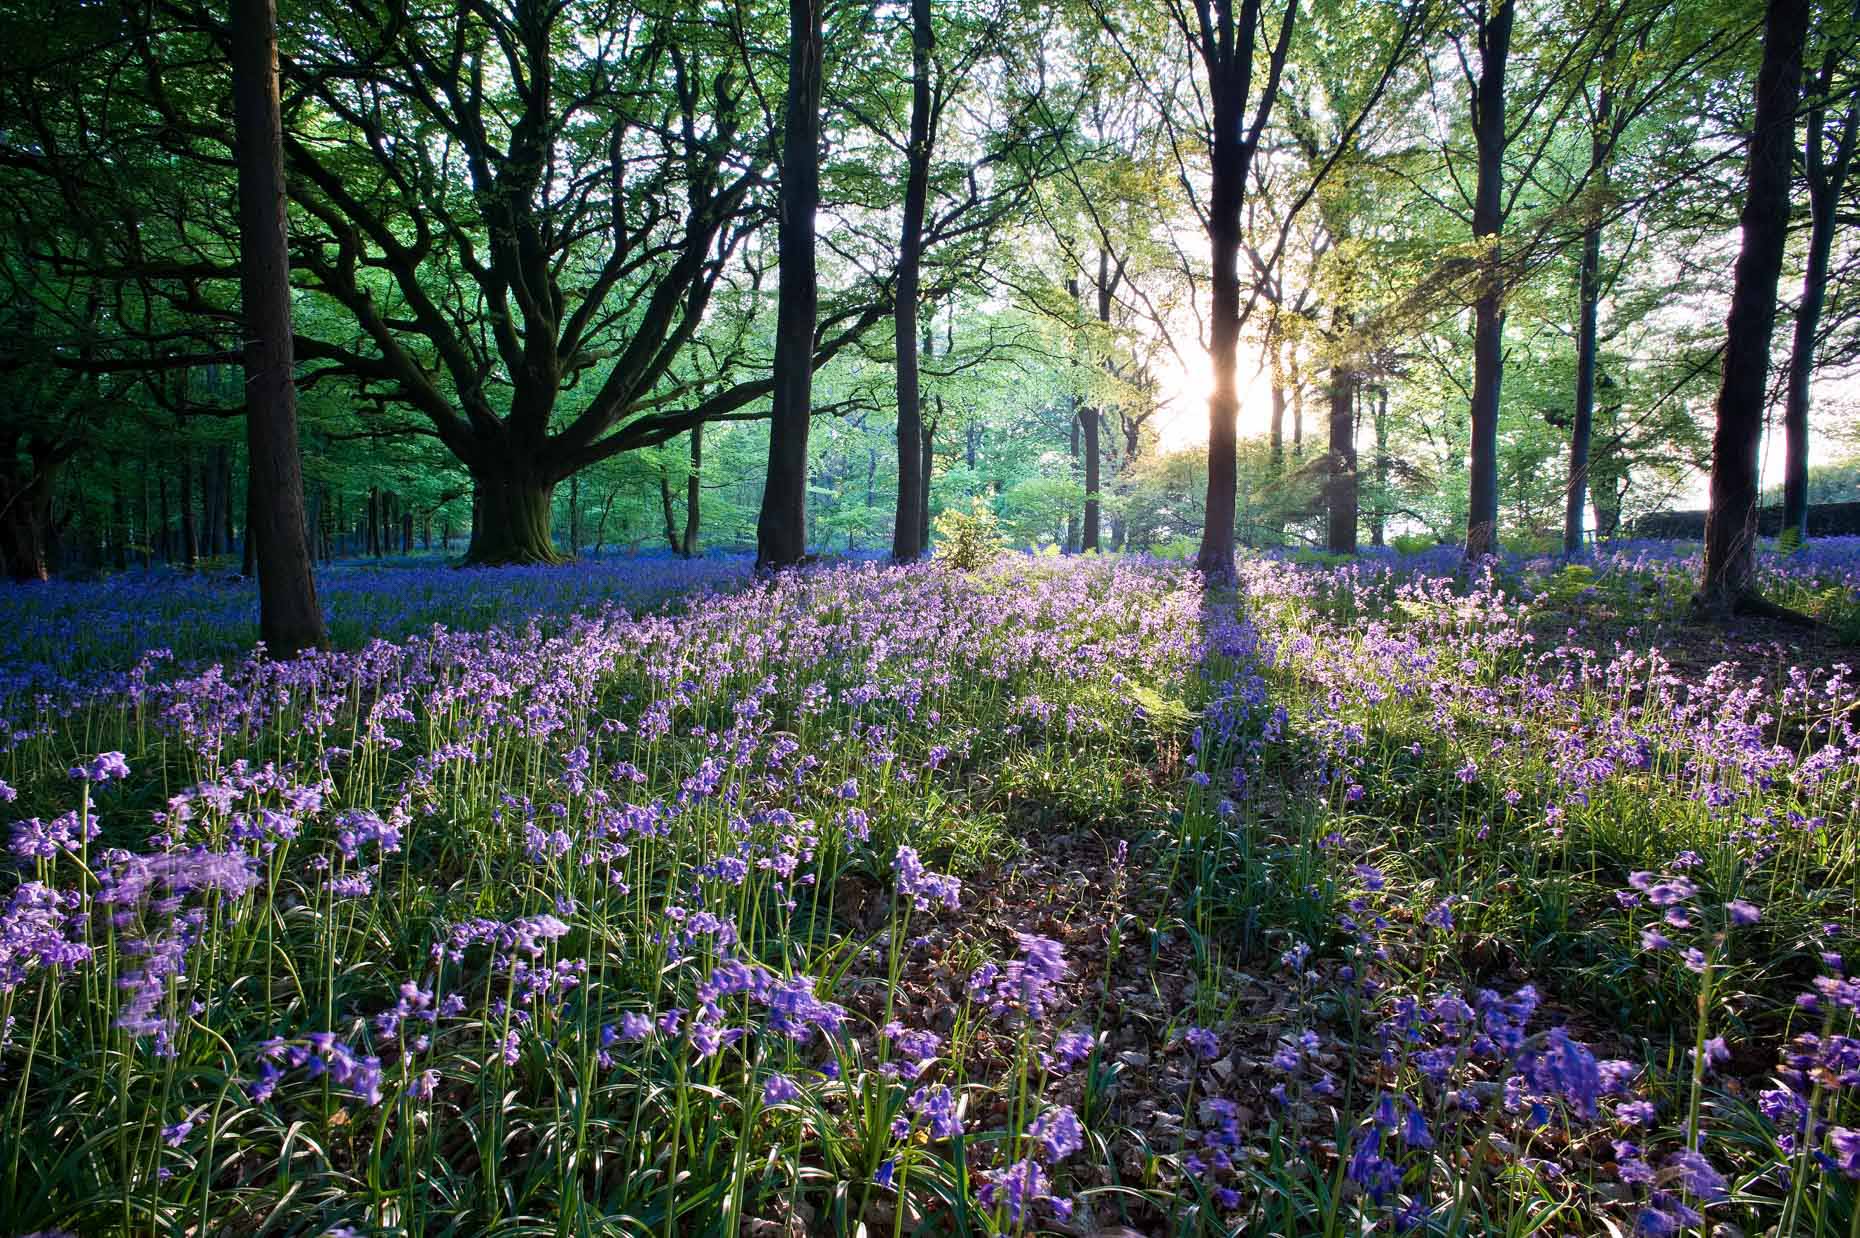 bluebell-flowers-woods-landscape-nobody-dorset-uk